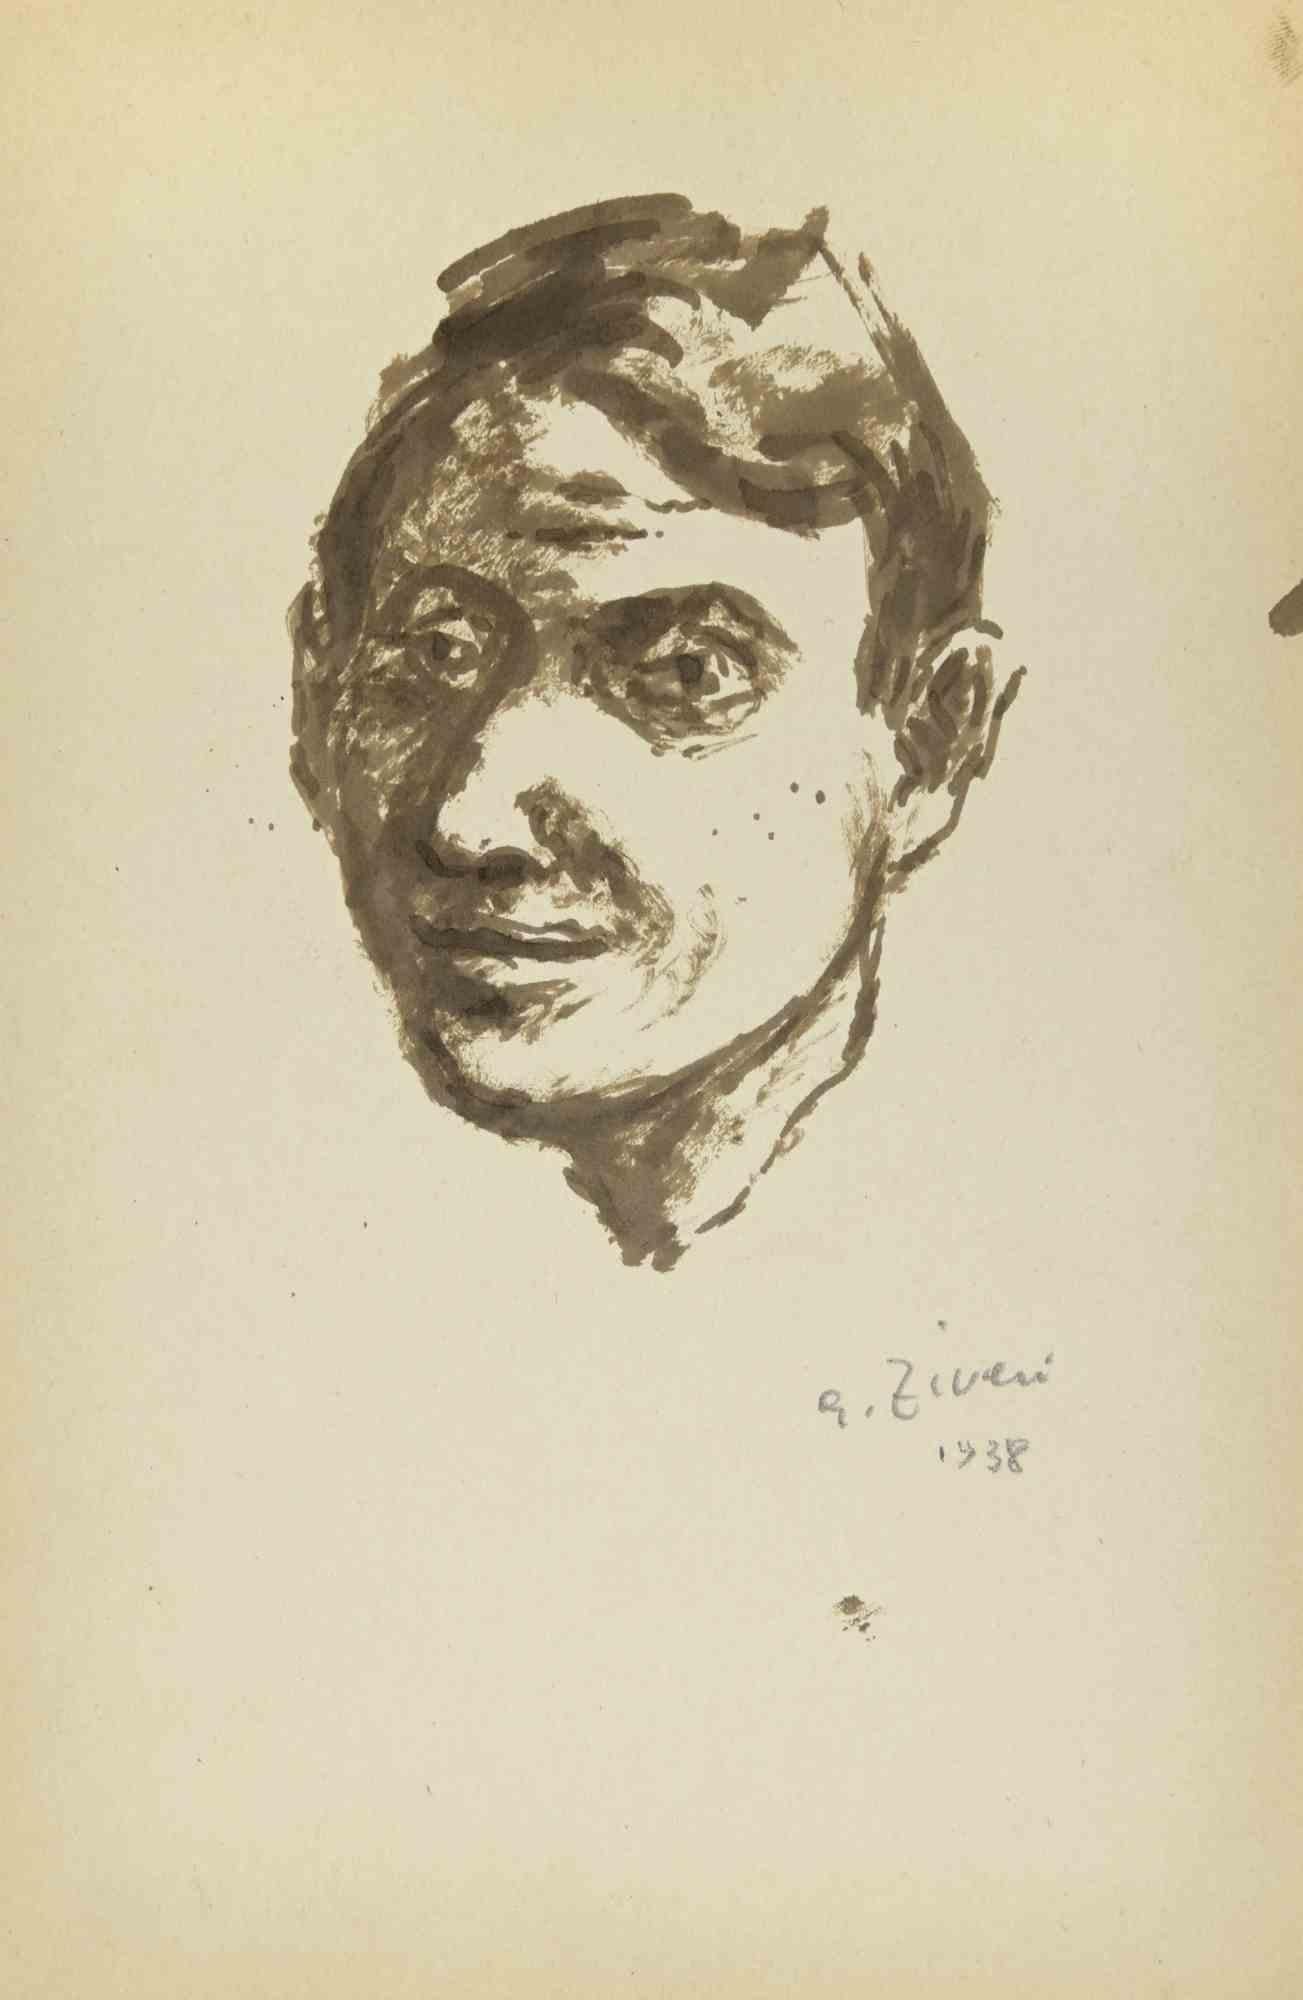 Das Porträt ist eine Zeichnung von Alberto Ziveri aus dem Jahr 1938.

Aquarell auf Papier.

Handsigniert und datiert.

In gutem Zustand mit leichten Stockflecken.

Das Kunstwerk wird durch geschickte Striche meisterhaft dargestellt.

Alberto Ziveri